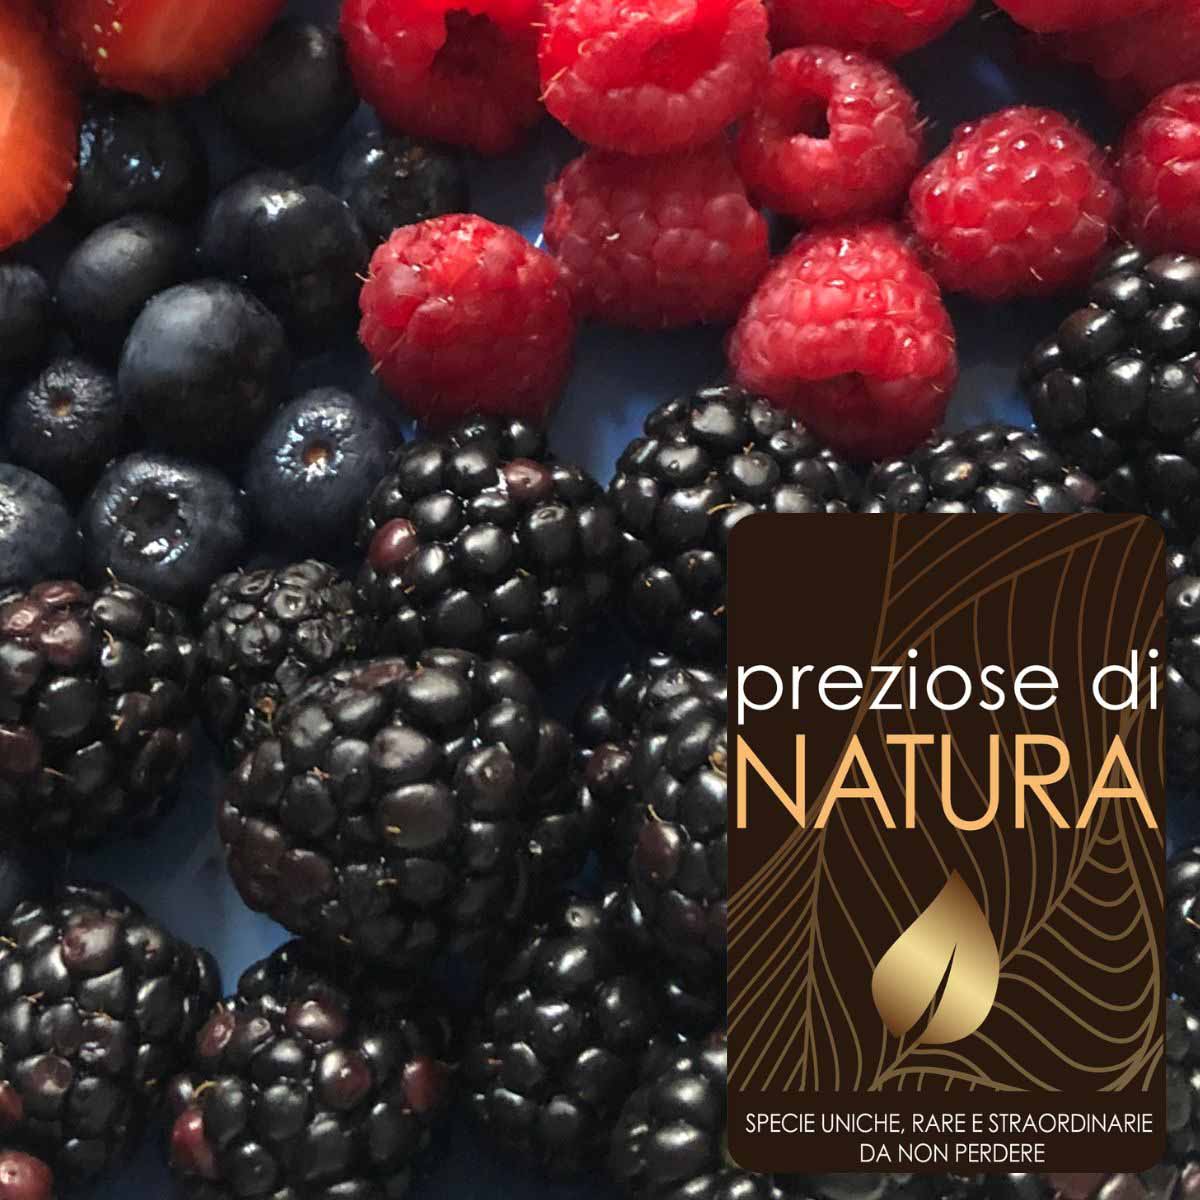 Preziose di Natura – Piccoli Frutti o frutti minori “Special”